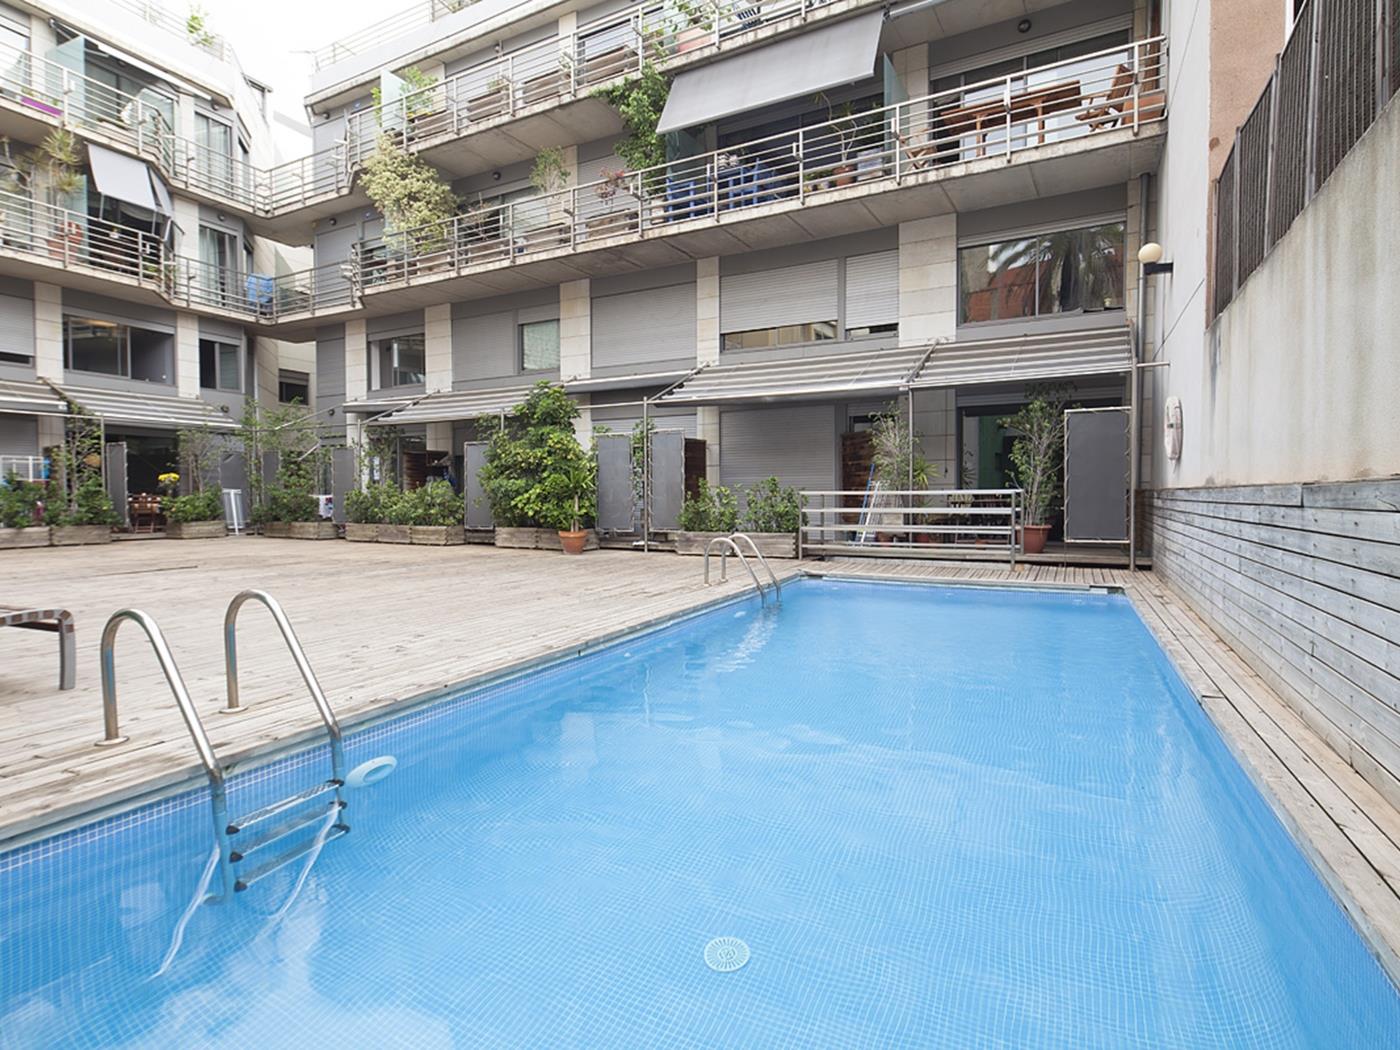 Maisonette-Wohnung mit Schwimmbad in der nähe des Parc Güell - My Space Barcelona Appartementen